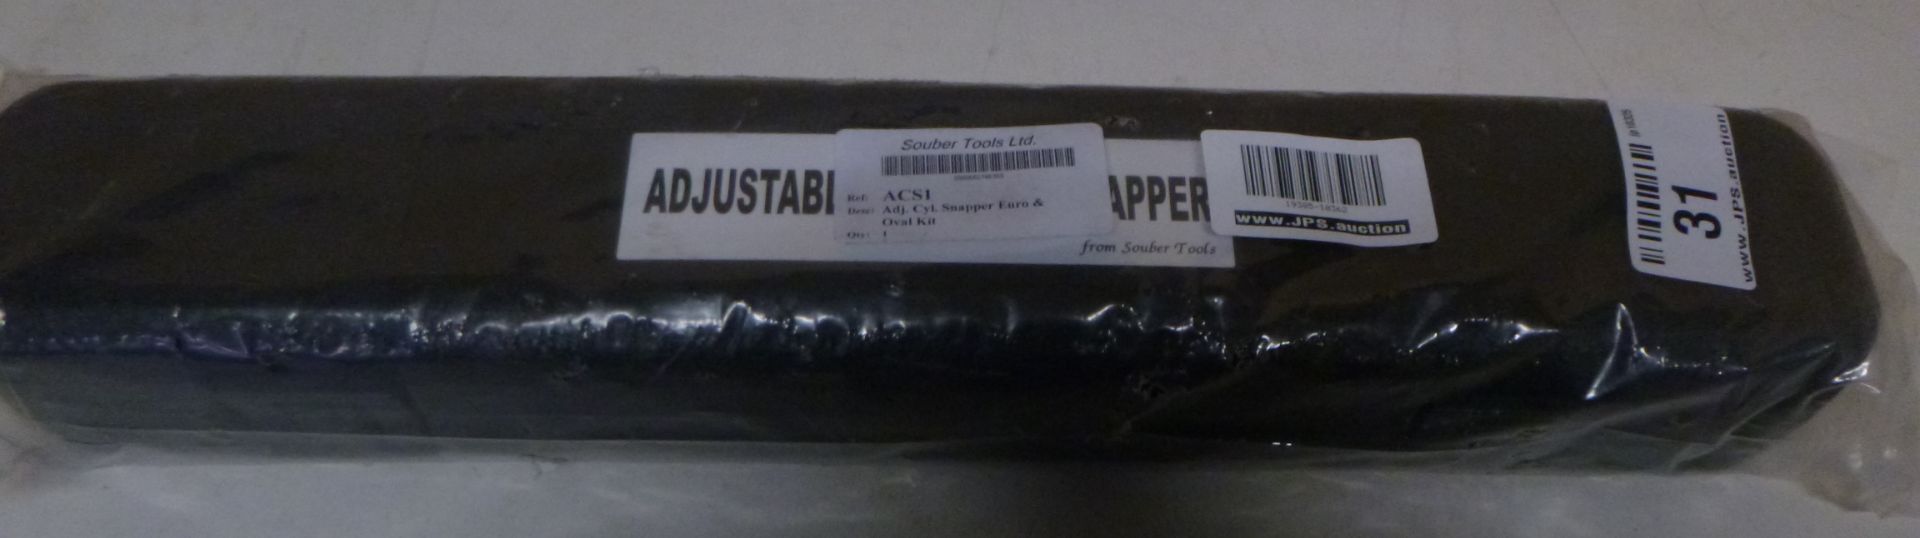 1 x Souber adjustable cylinder snapper | EAN: 5060082786365 | RRP £120 - Bild 2 aus 2